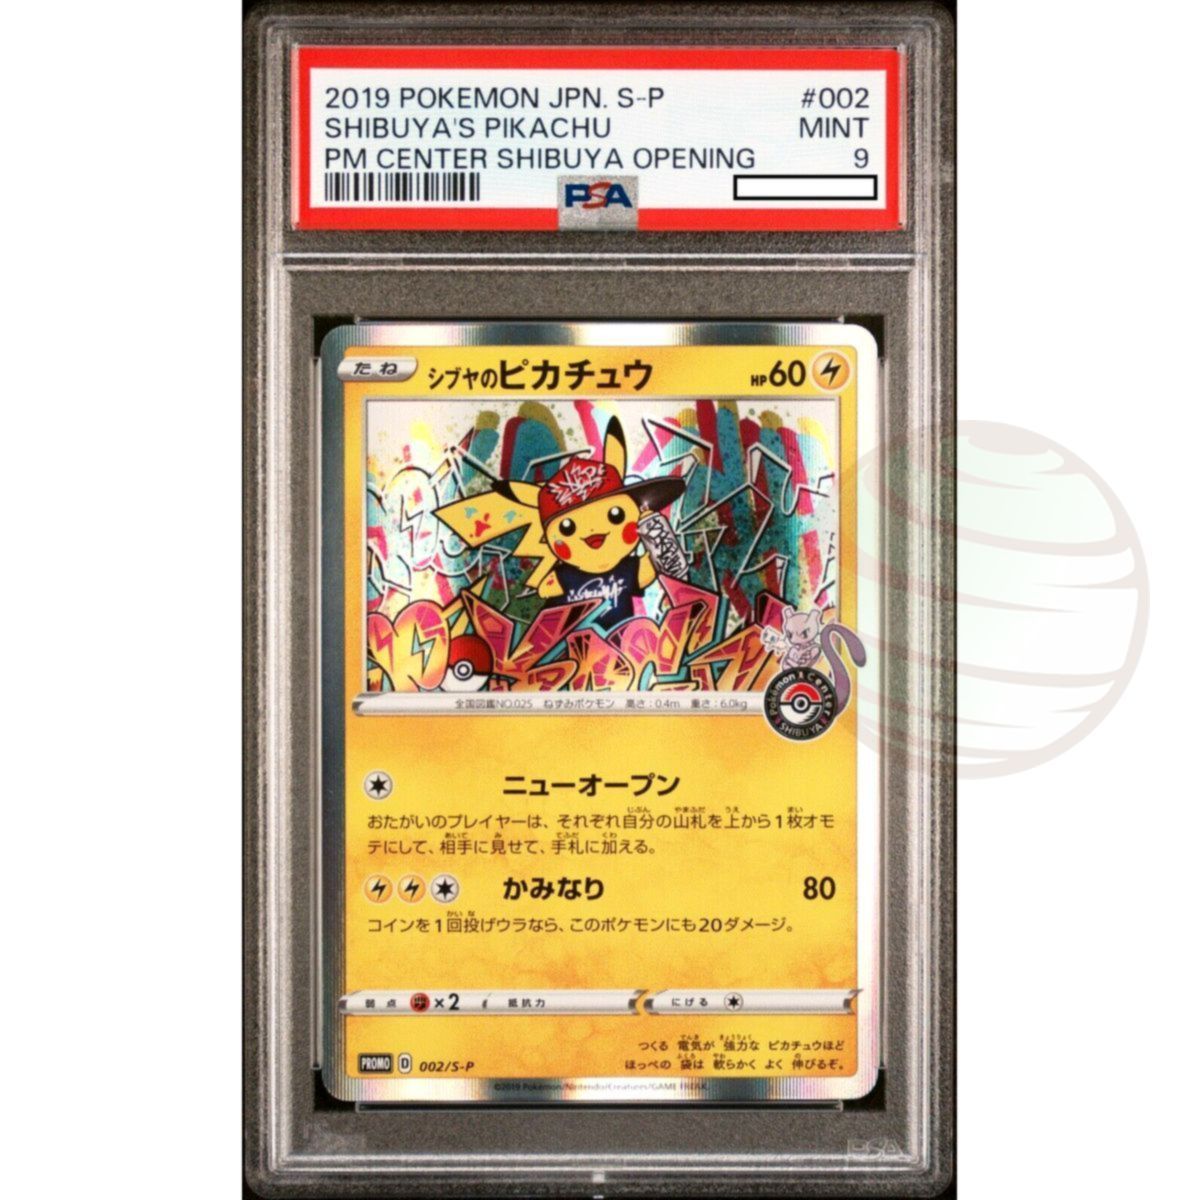 Item [PSA 9 - Mint] - Carte Gradée - Pikachu 002/S-P Pokémon Center Shibuya Opening 2019 - Pokémon - Japonais